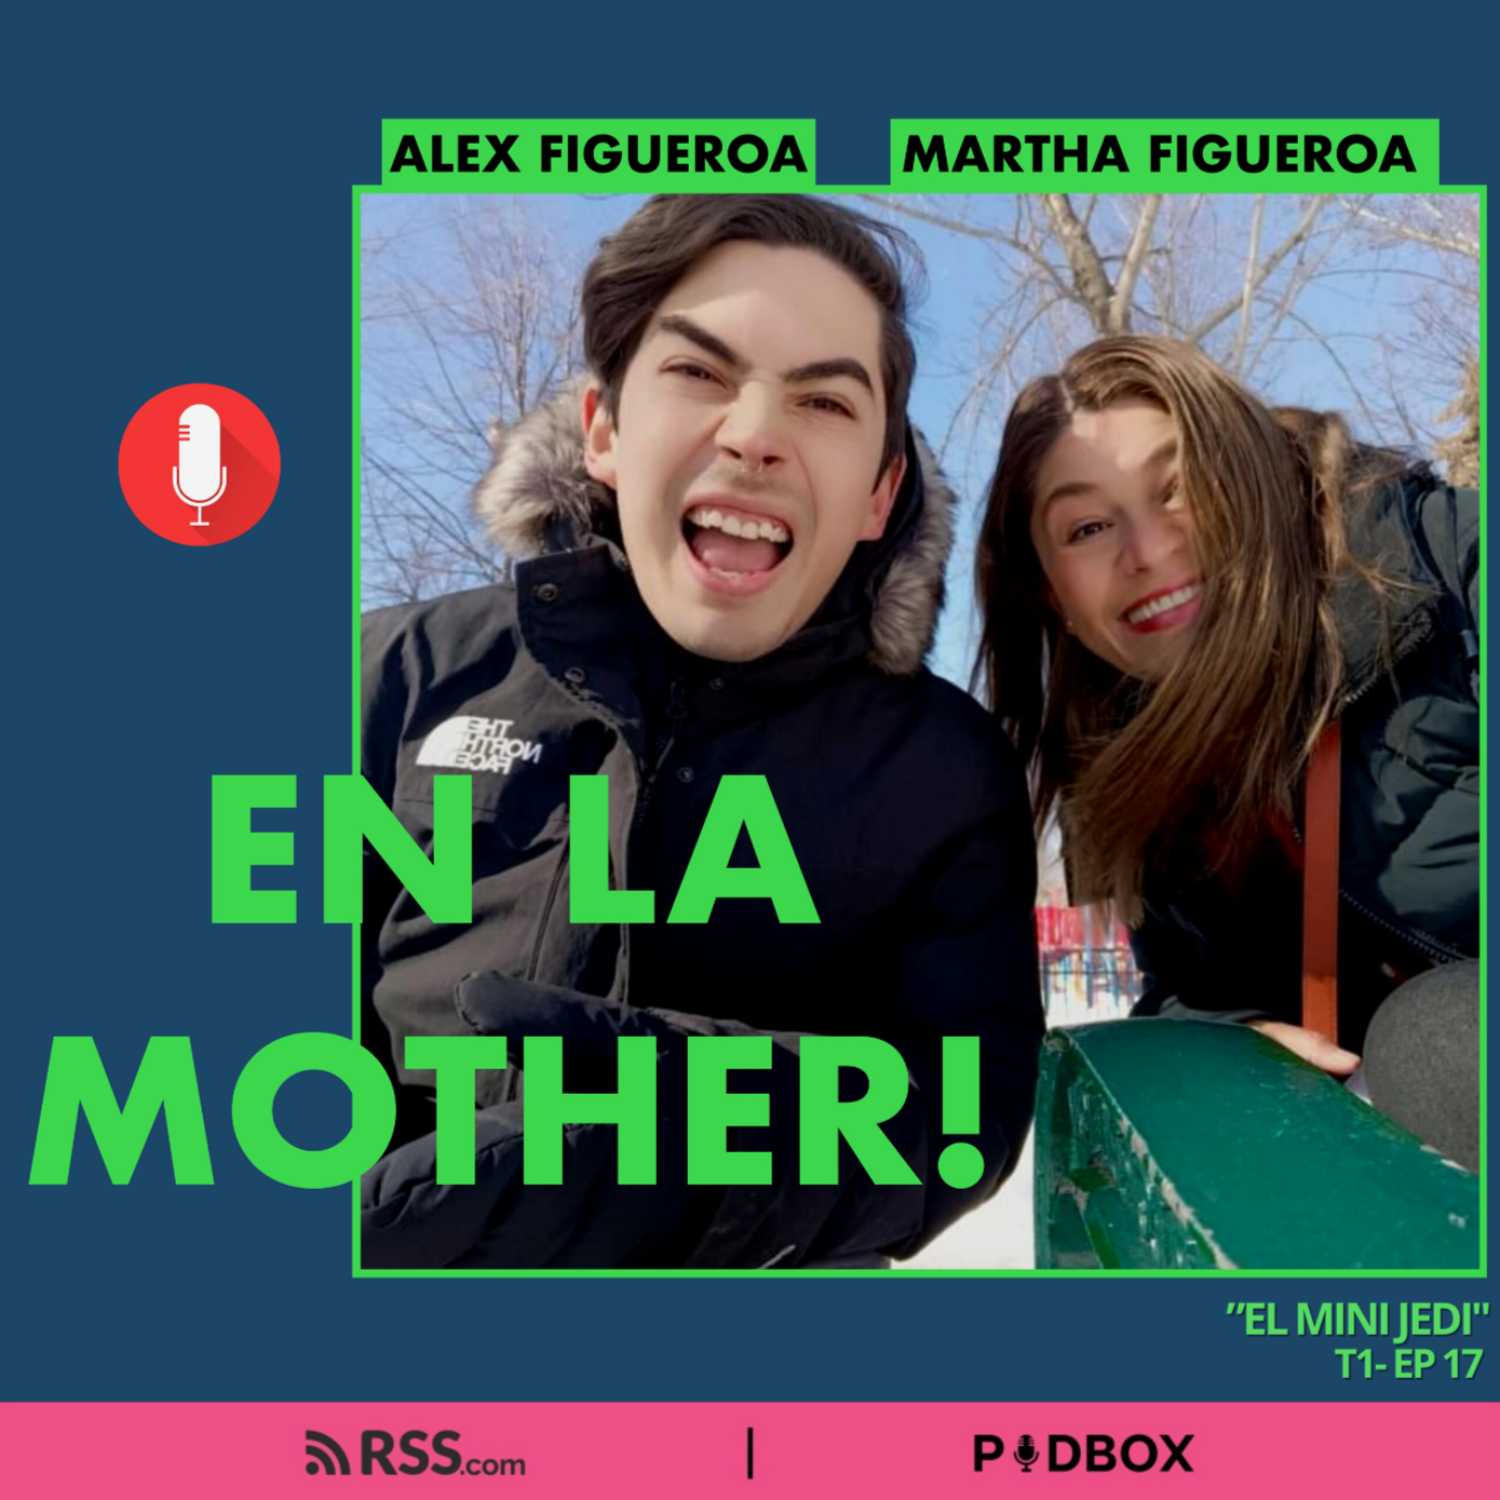 EN LA MOTHER! - T1 - EP 17 -  "EL MINI JEDI"